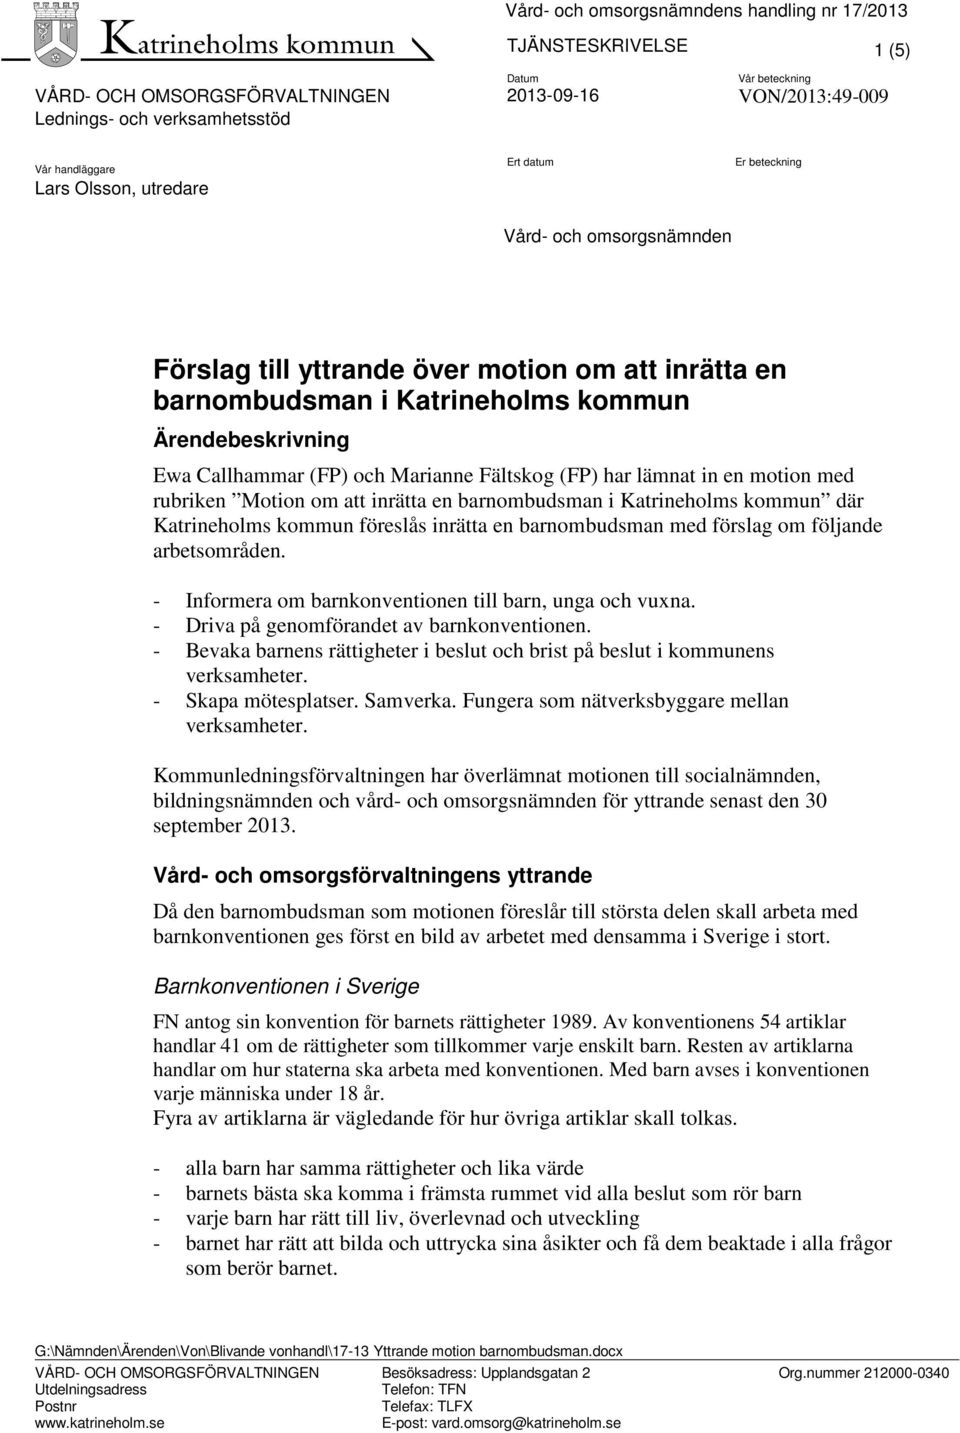 Katrineholms kommun där Katrineholms kommun föreslås inrätta en barnombudsman med förslag om följande arbetsområden. - Informera om barnkonventionen till barn, unga och vuxna.